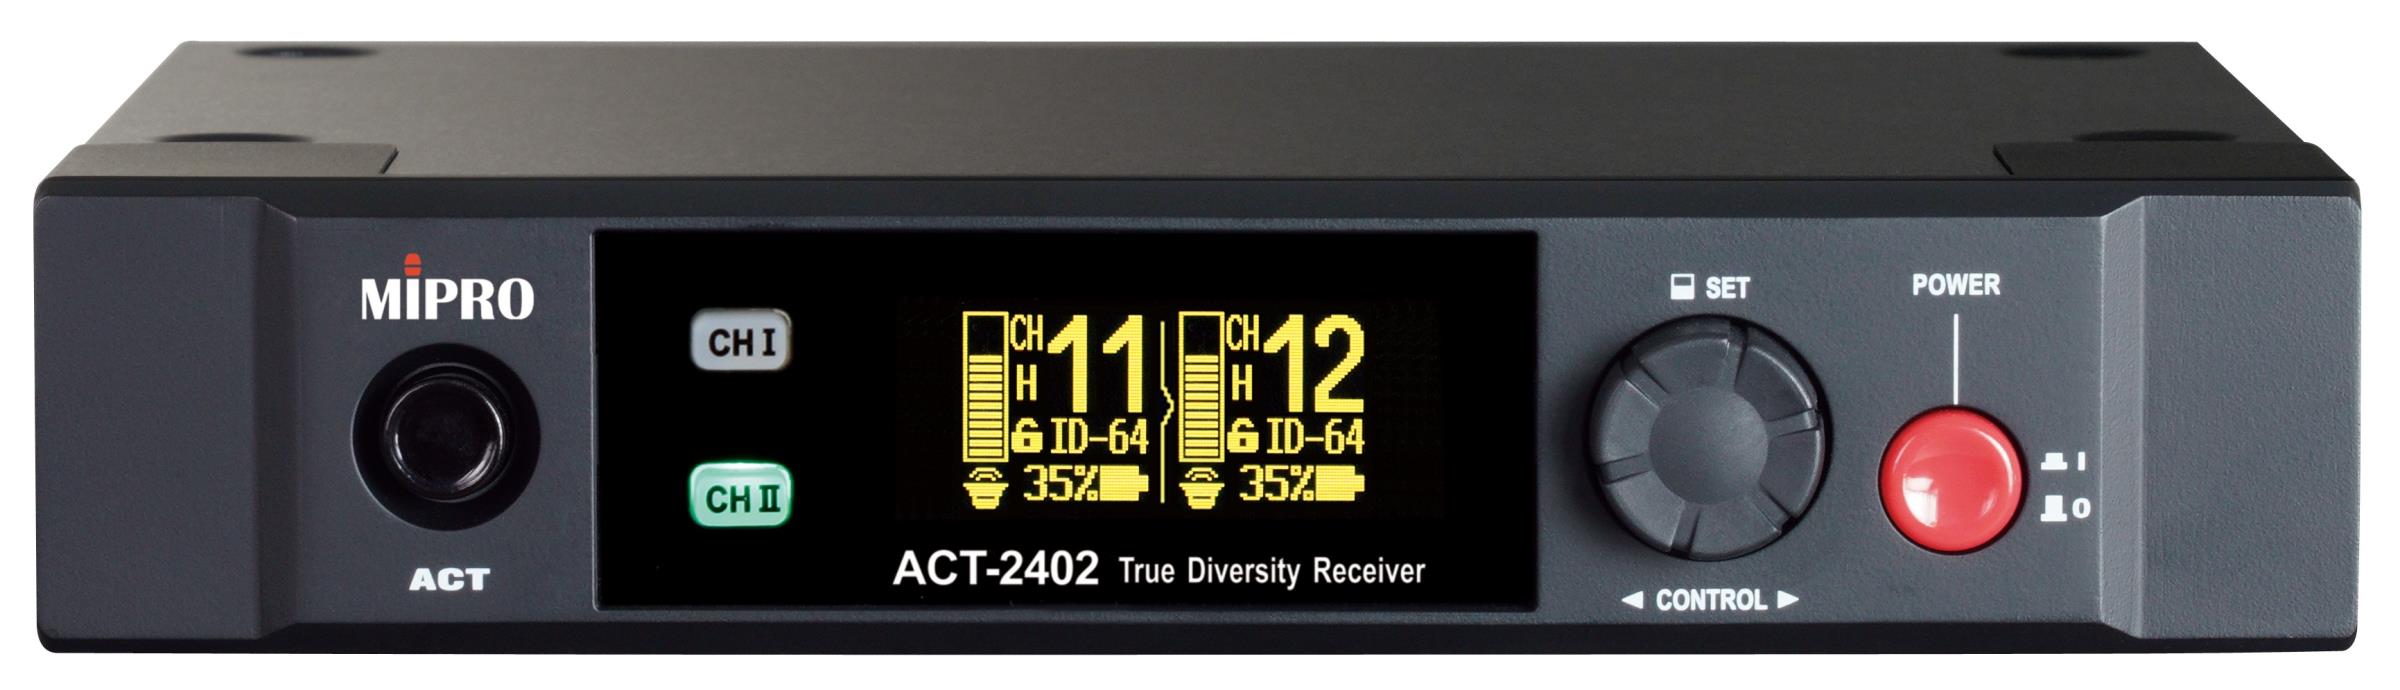 Mipro ACT-2402 Digitaler 2-Kanal Empfänger 2,4 GHz